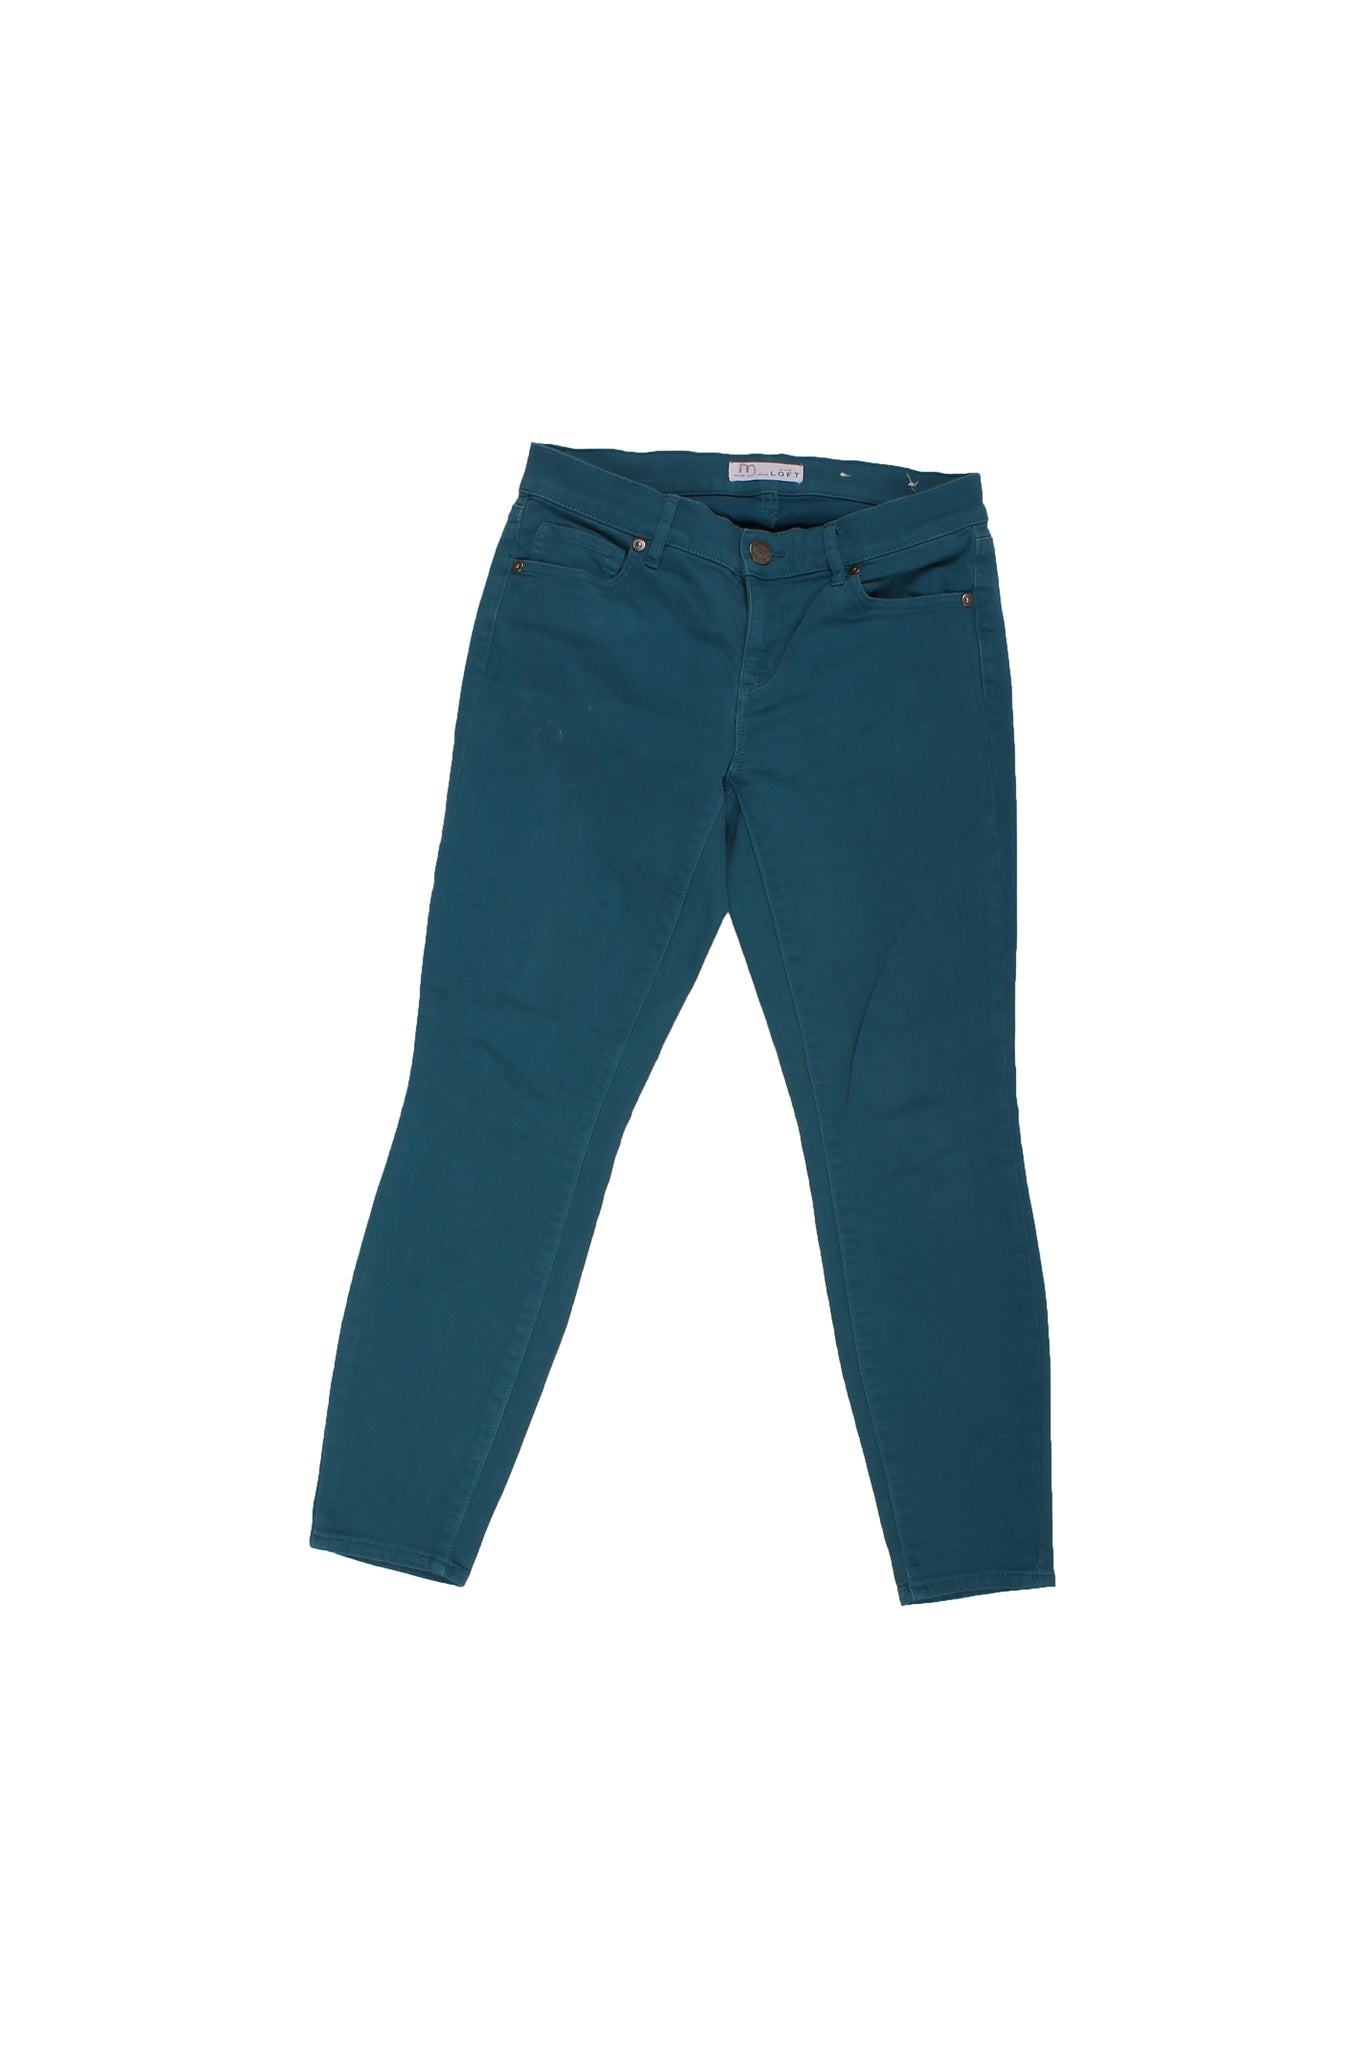 LOFT - ANN TAYLOR - Skinny Jeans Turquesa